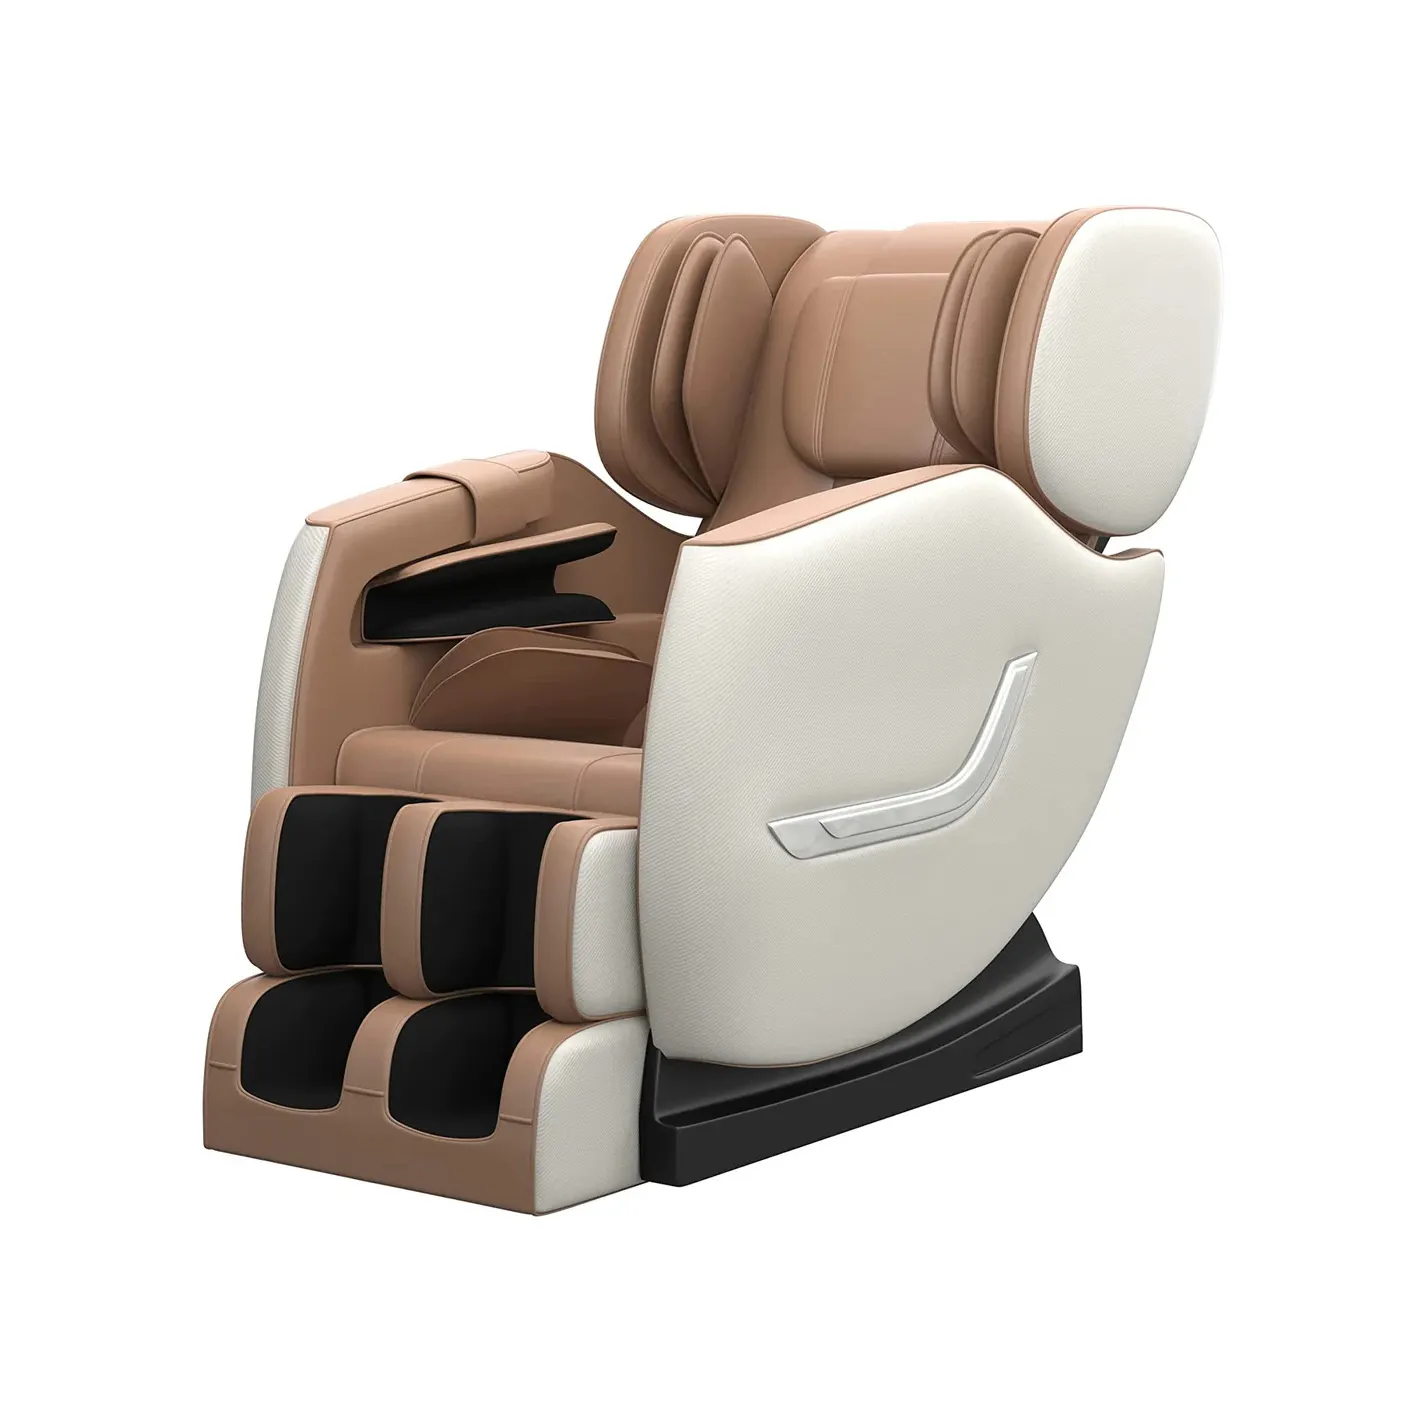 Penjualan laris SS01 kursi pijat kesehatan pintar Khaki desain kaki lipat dan bantal untuk pijat pinggang lengan kaki tubuh leher